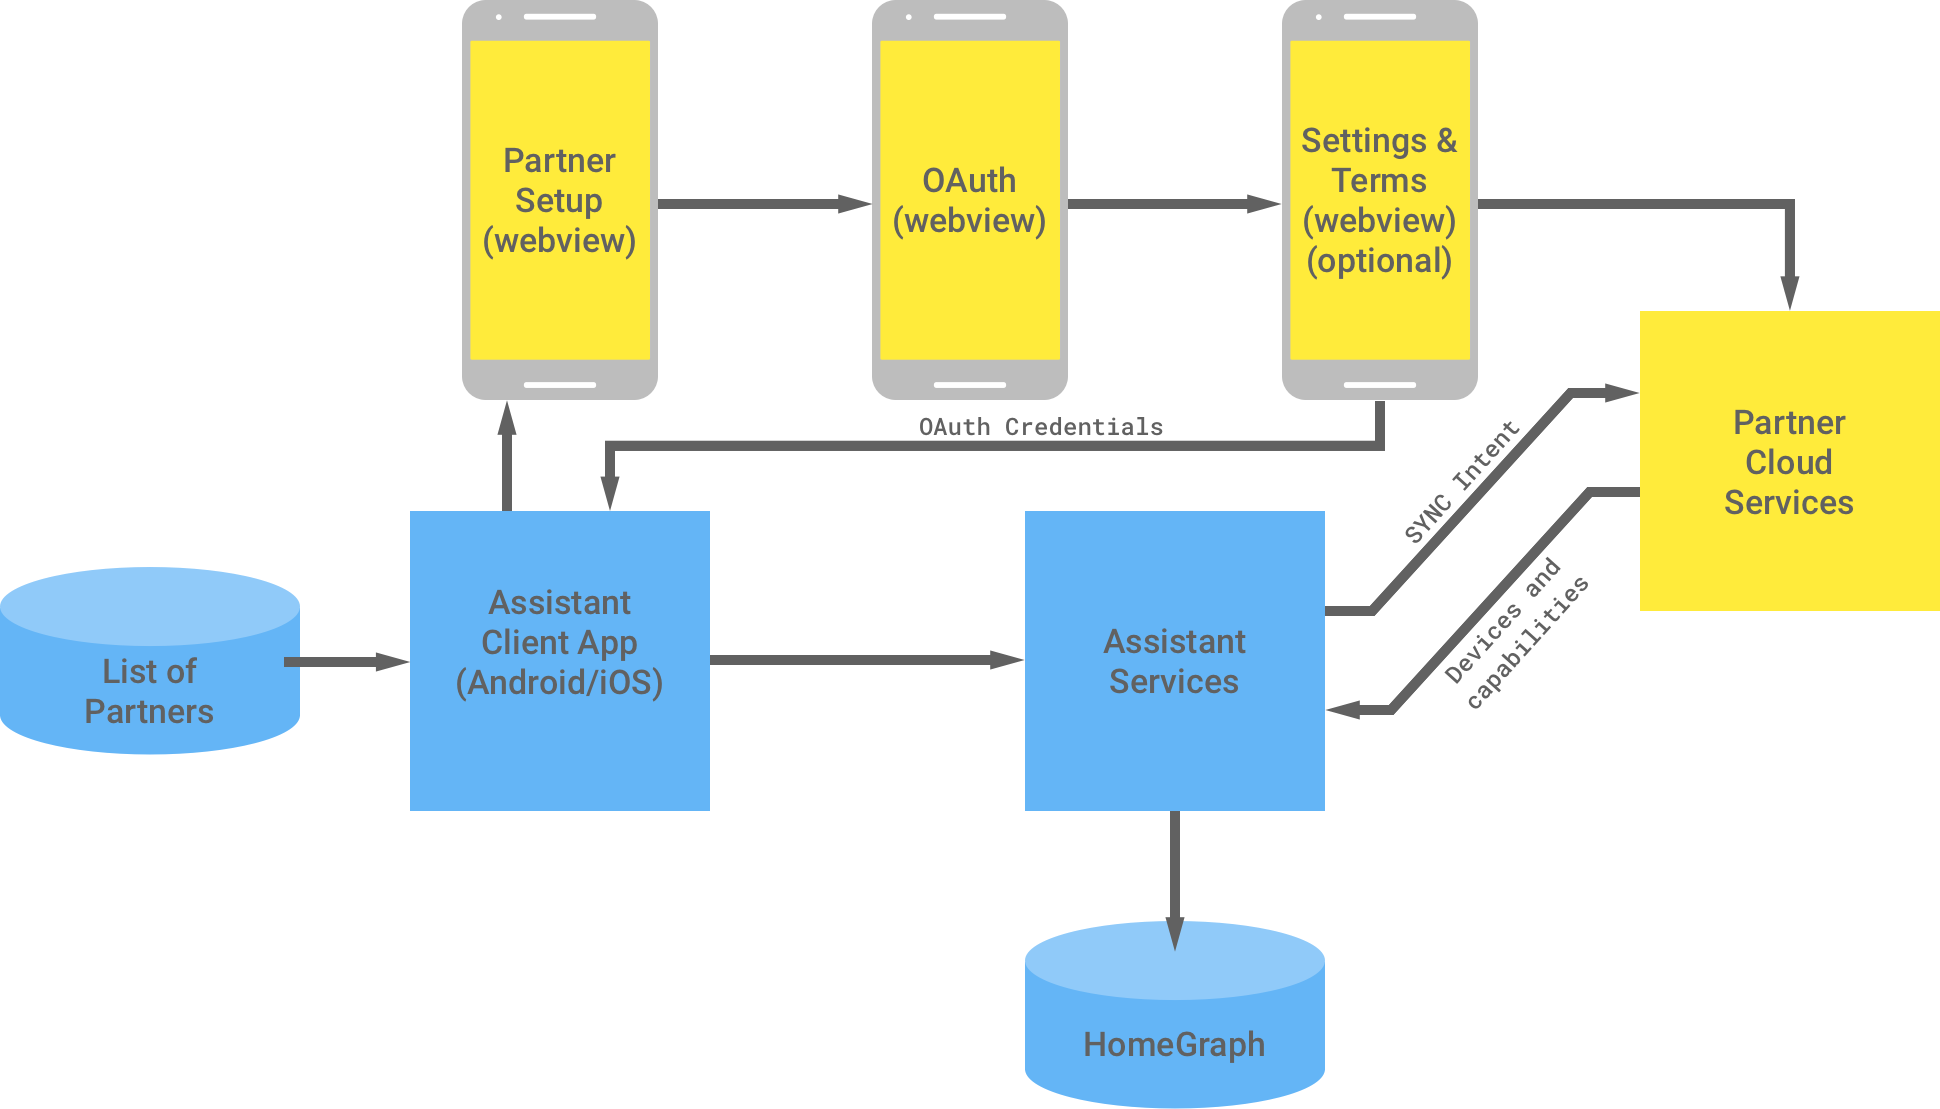 Ta ilustracja przedstawia interakcję między infrastrukturą Google a infrastrukturą partnera. Z infrastruktury Google dostępna jest lista partnerów, którzy są dostępni w aplikacji klienckiej Asystenta, a następnie trafiają do infrastruktury partnera, aby dokończyć uwierzytelnianie OAuth. Uwierzytelnianie OAuth po stronie partnera obejmuje komponent WebView konfiguracji partnera, komponent WebView protokołu OAuth, opcjonalne ustawienia i warunki usługi oraz usługi w chmurze partnera. Następnie infrastruktura partnera zwraca dane logowania OAuth do aplikacji klienckiej Asystenta. Usługi w chmurze partnera wysyłają do usług Asystenta dostępne urządzenia i możliwości, które zapisują informacje na wykresie głównym.